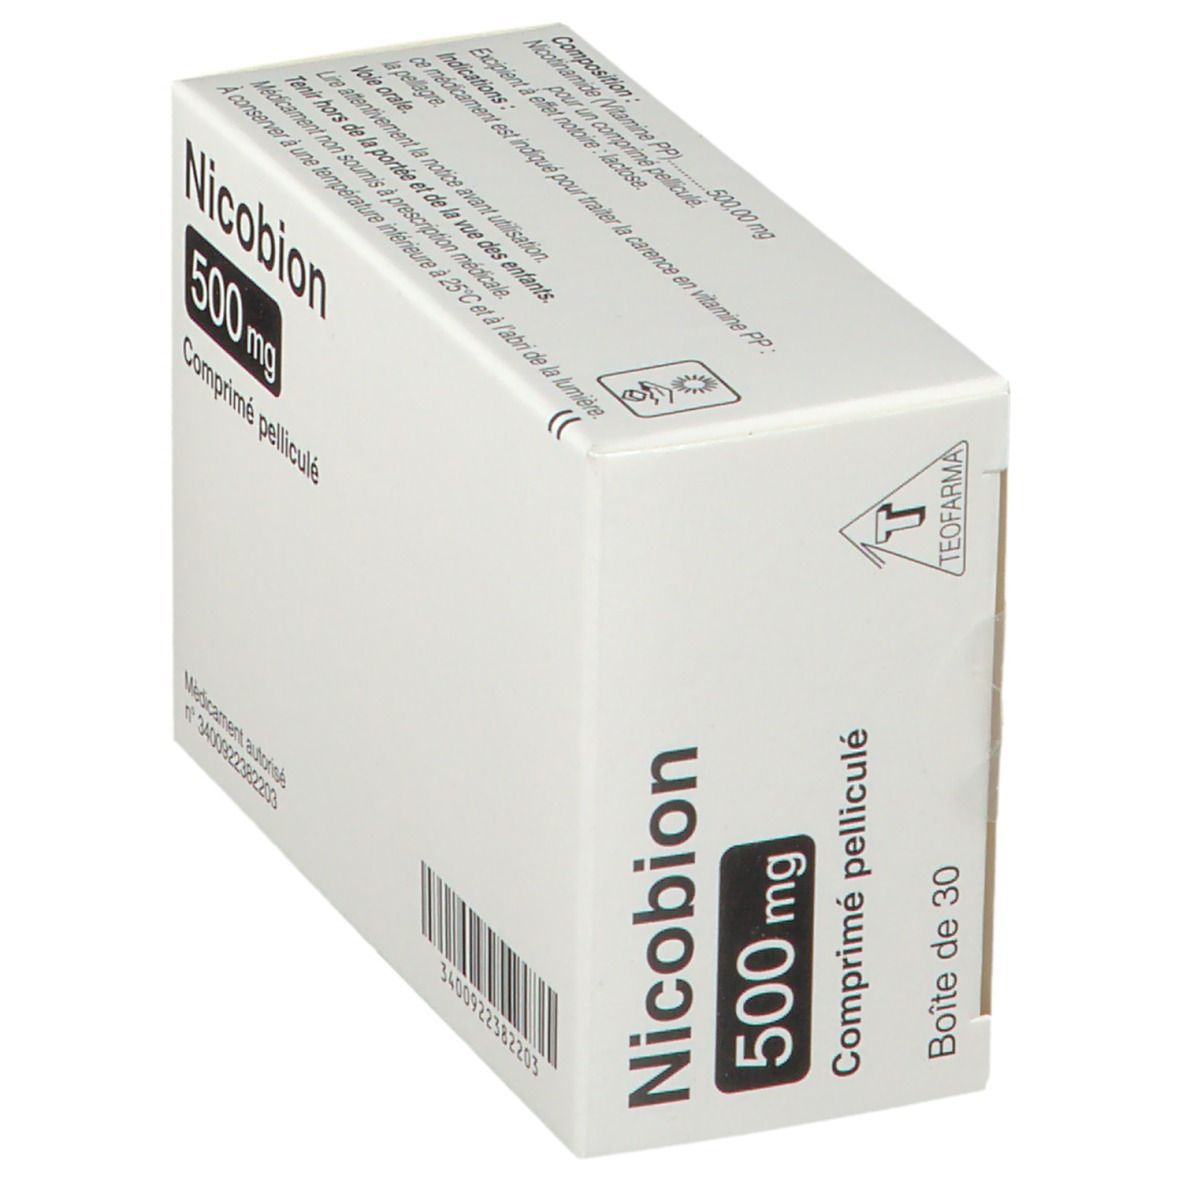 Nicobion 500 mg